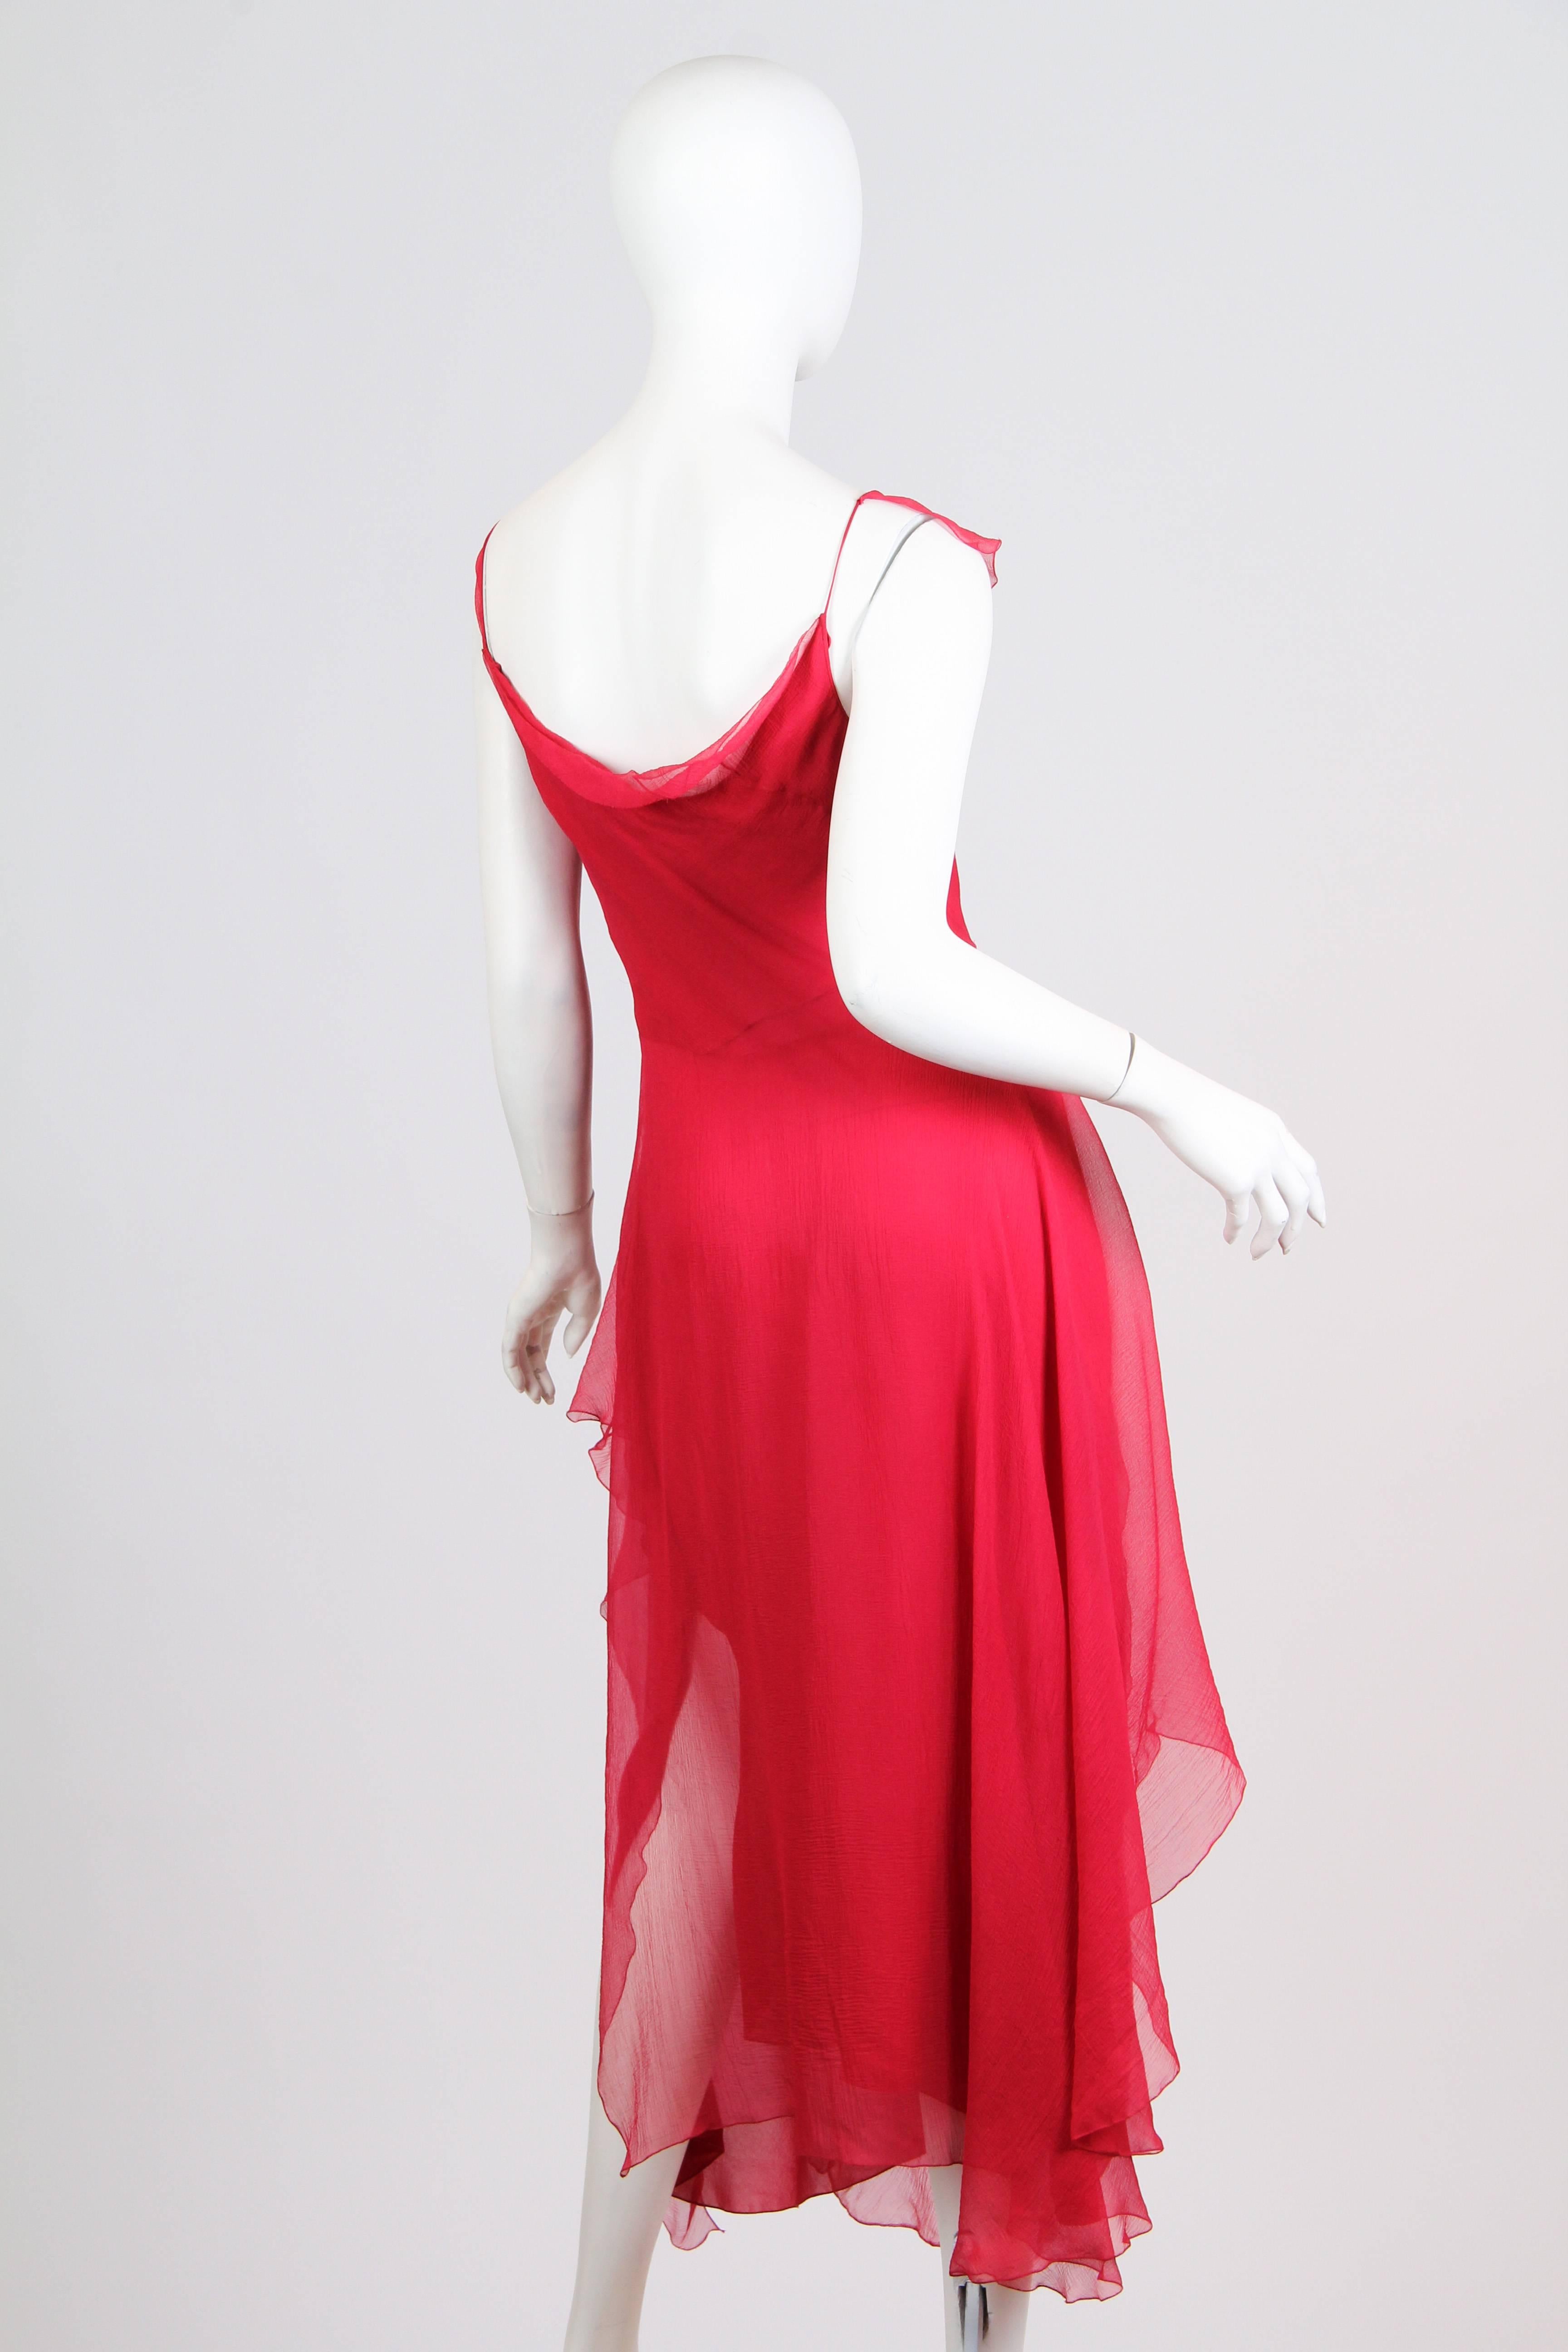 Red John Galliano Chiffon Dress